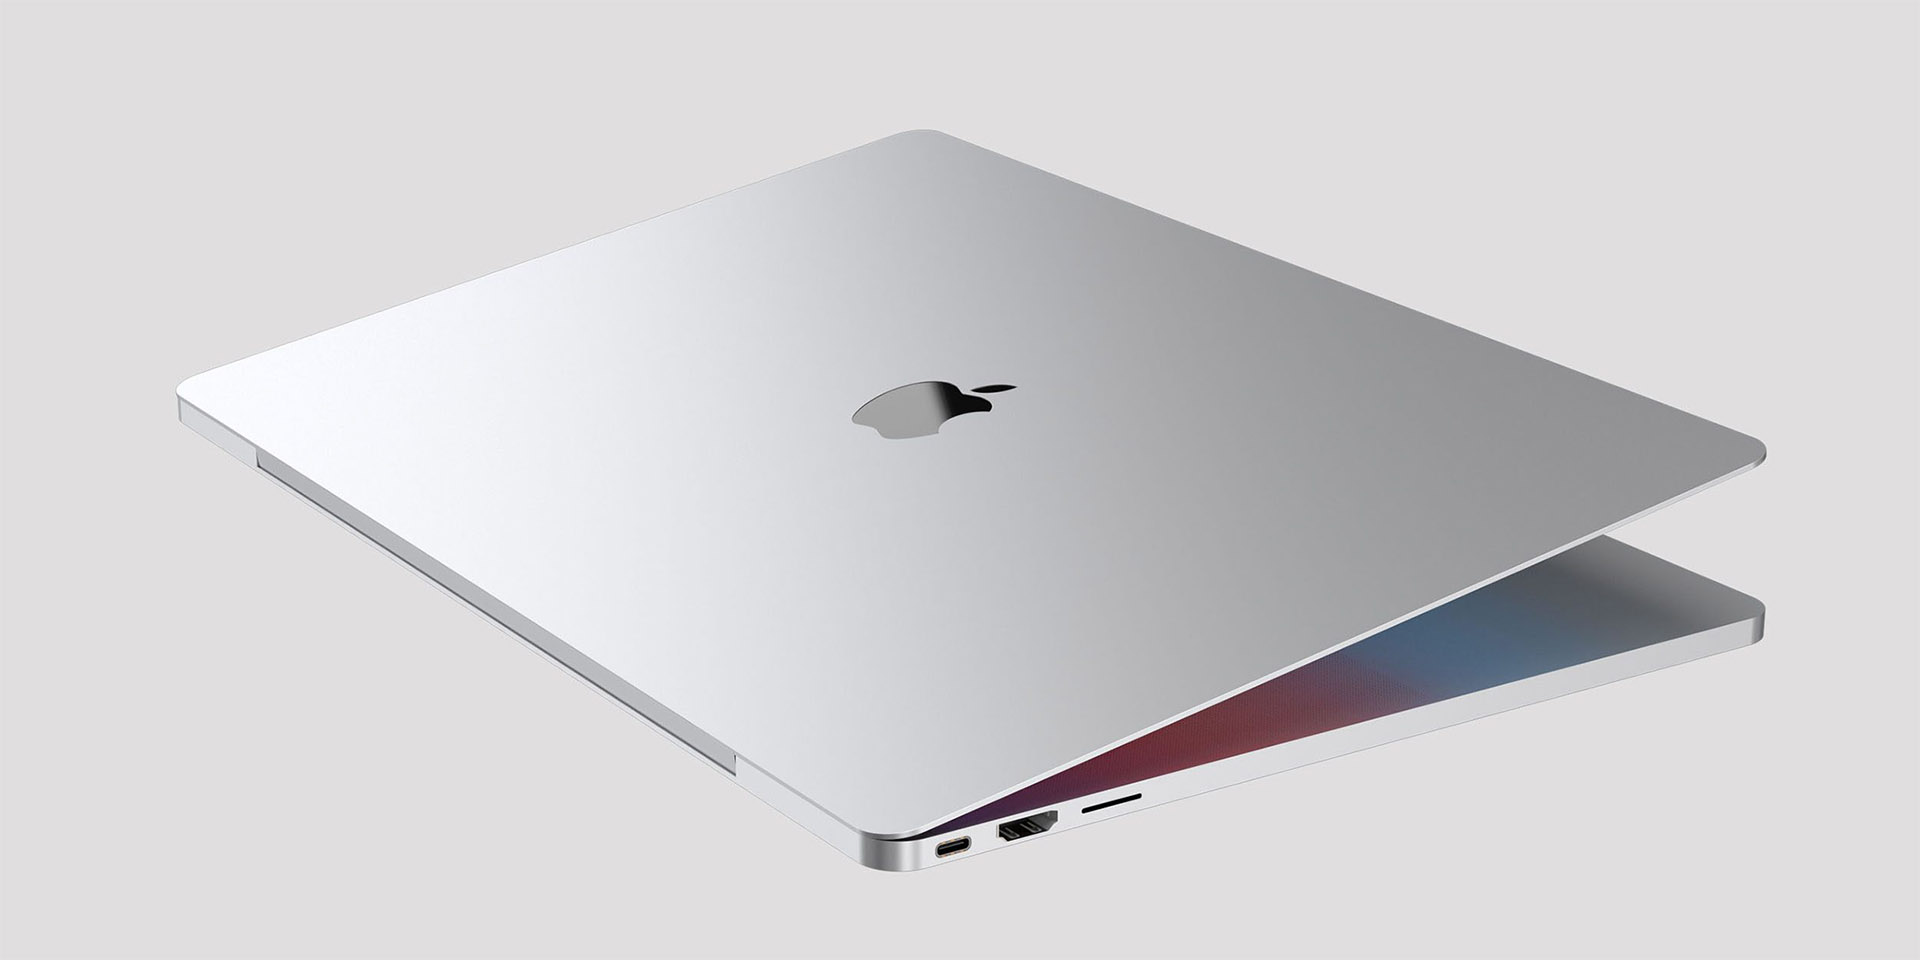 أبل تضيف جهاز MacBook Pro 2012 لقائمة المنتجات القديمة